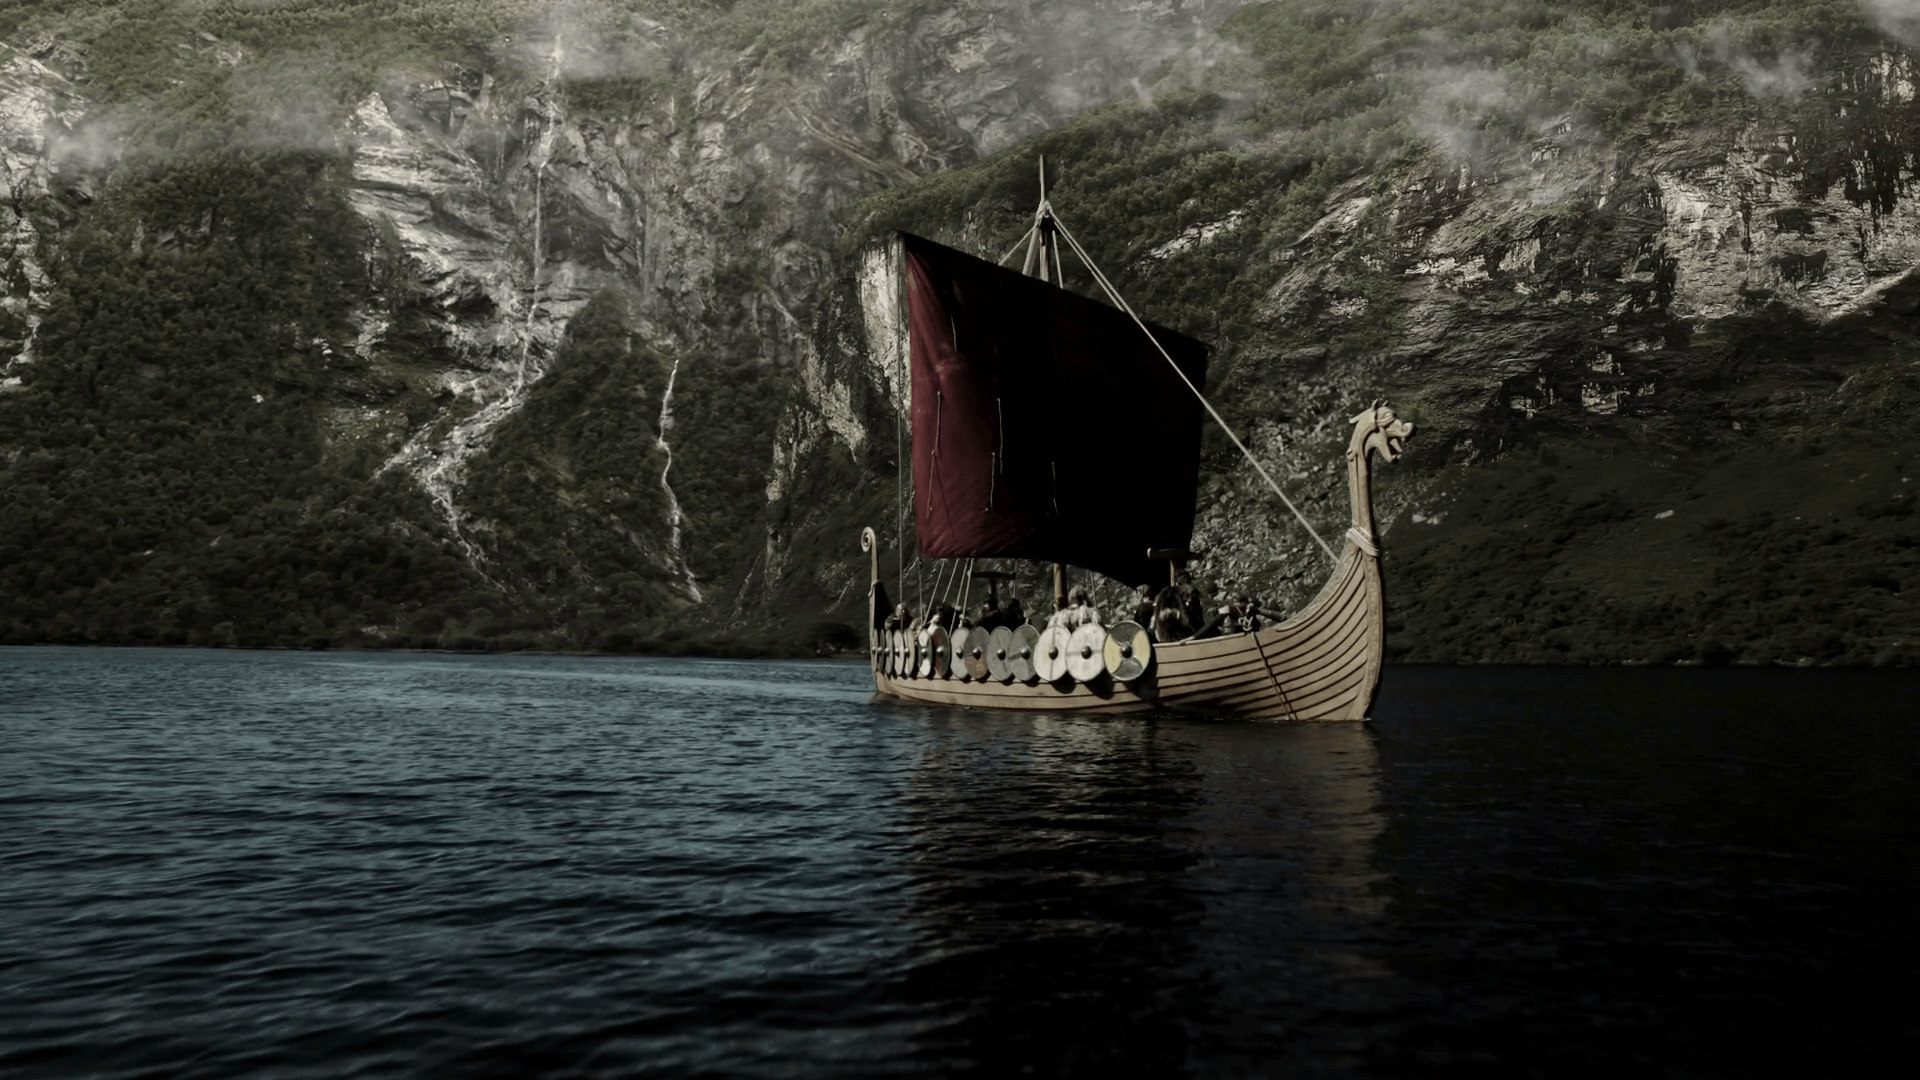 Red sail of a Viking ship wallpaper and image